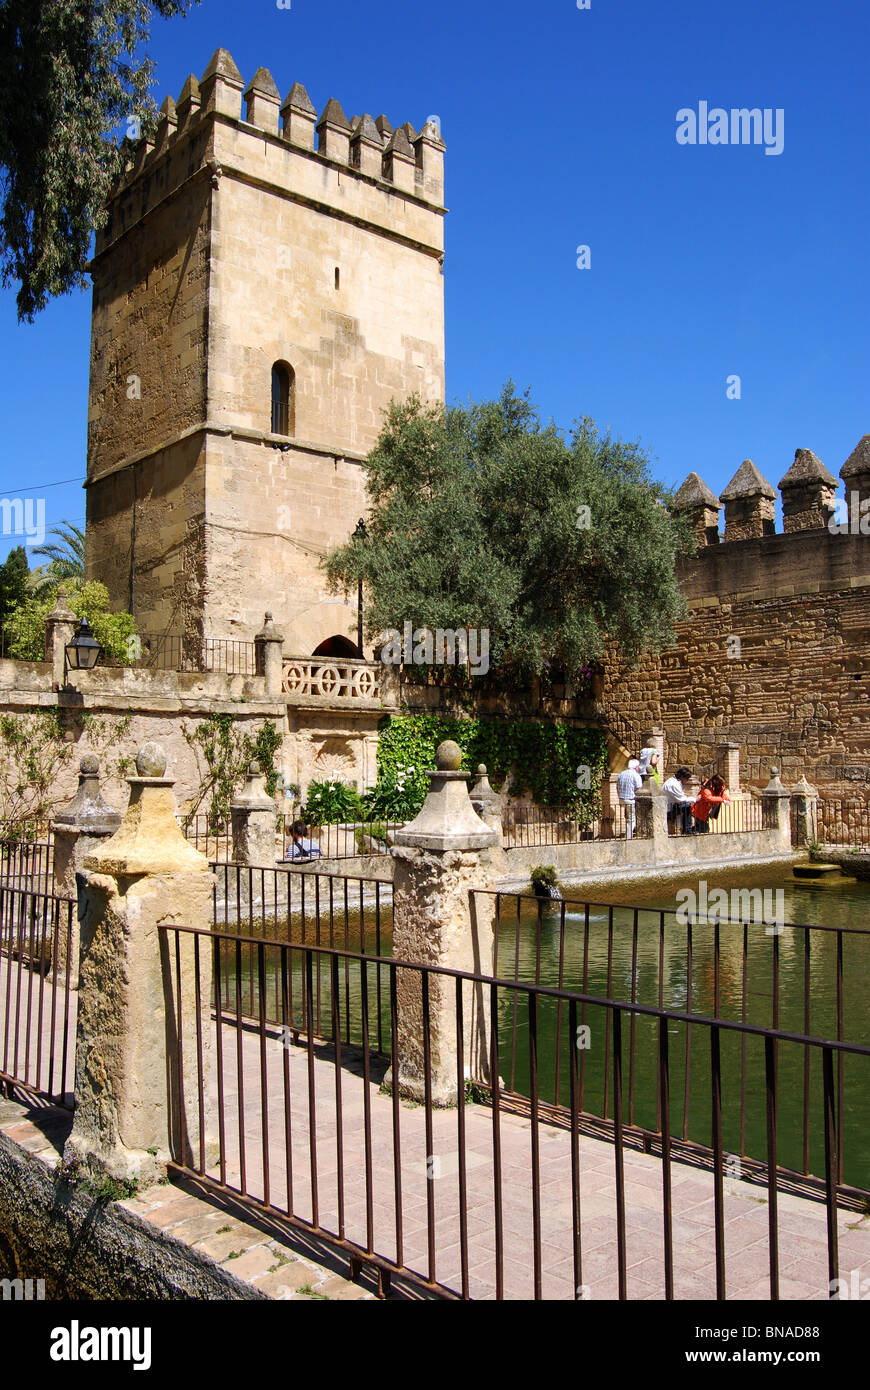 Palace Forteresse des Rois Chrétiens - tour du château avec piscine à l'avant-plan, Córdoba, Cordoue, Andalousie, province de l'Espagne. Banque D'Images